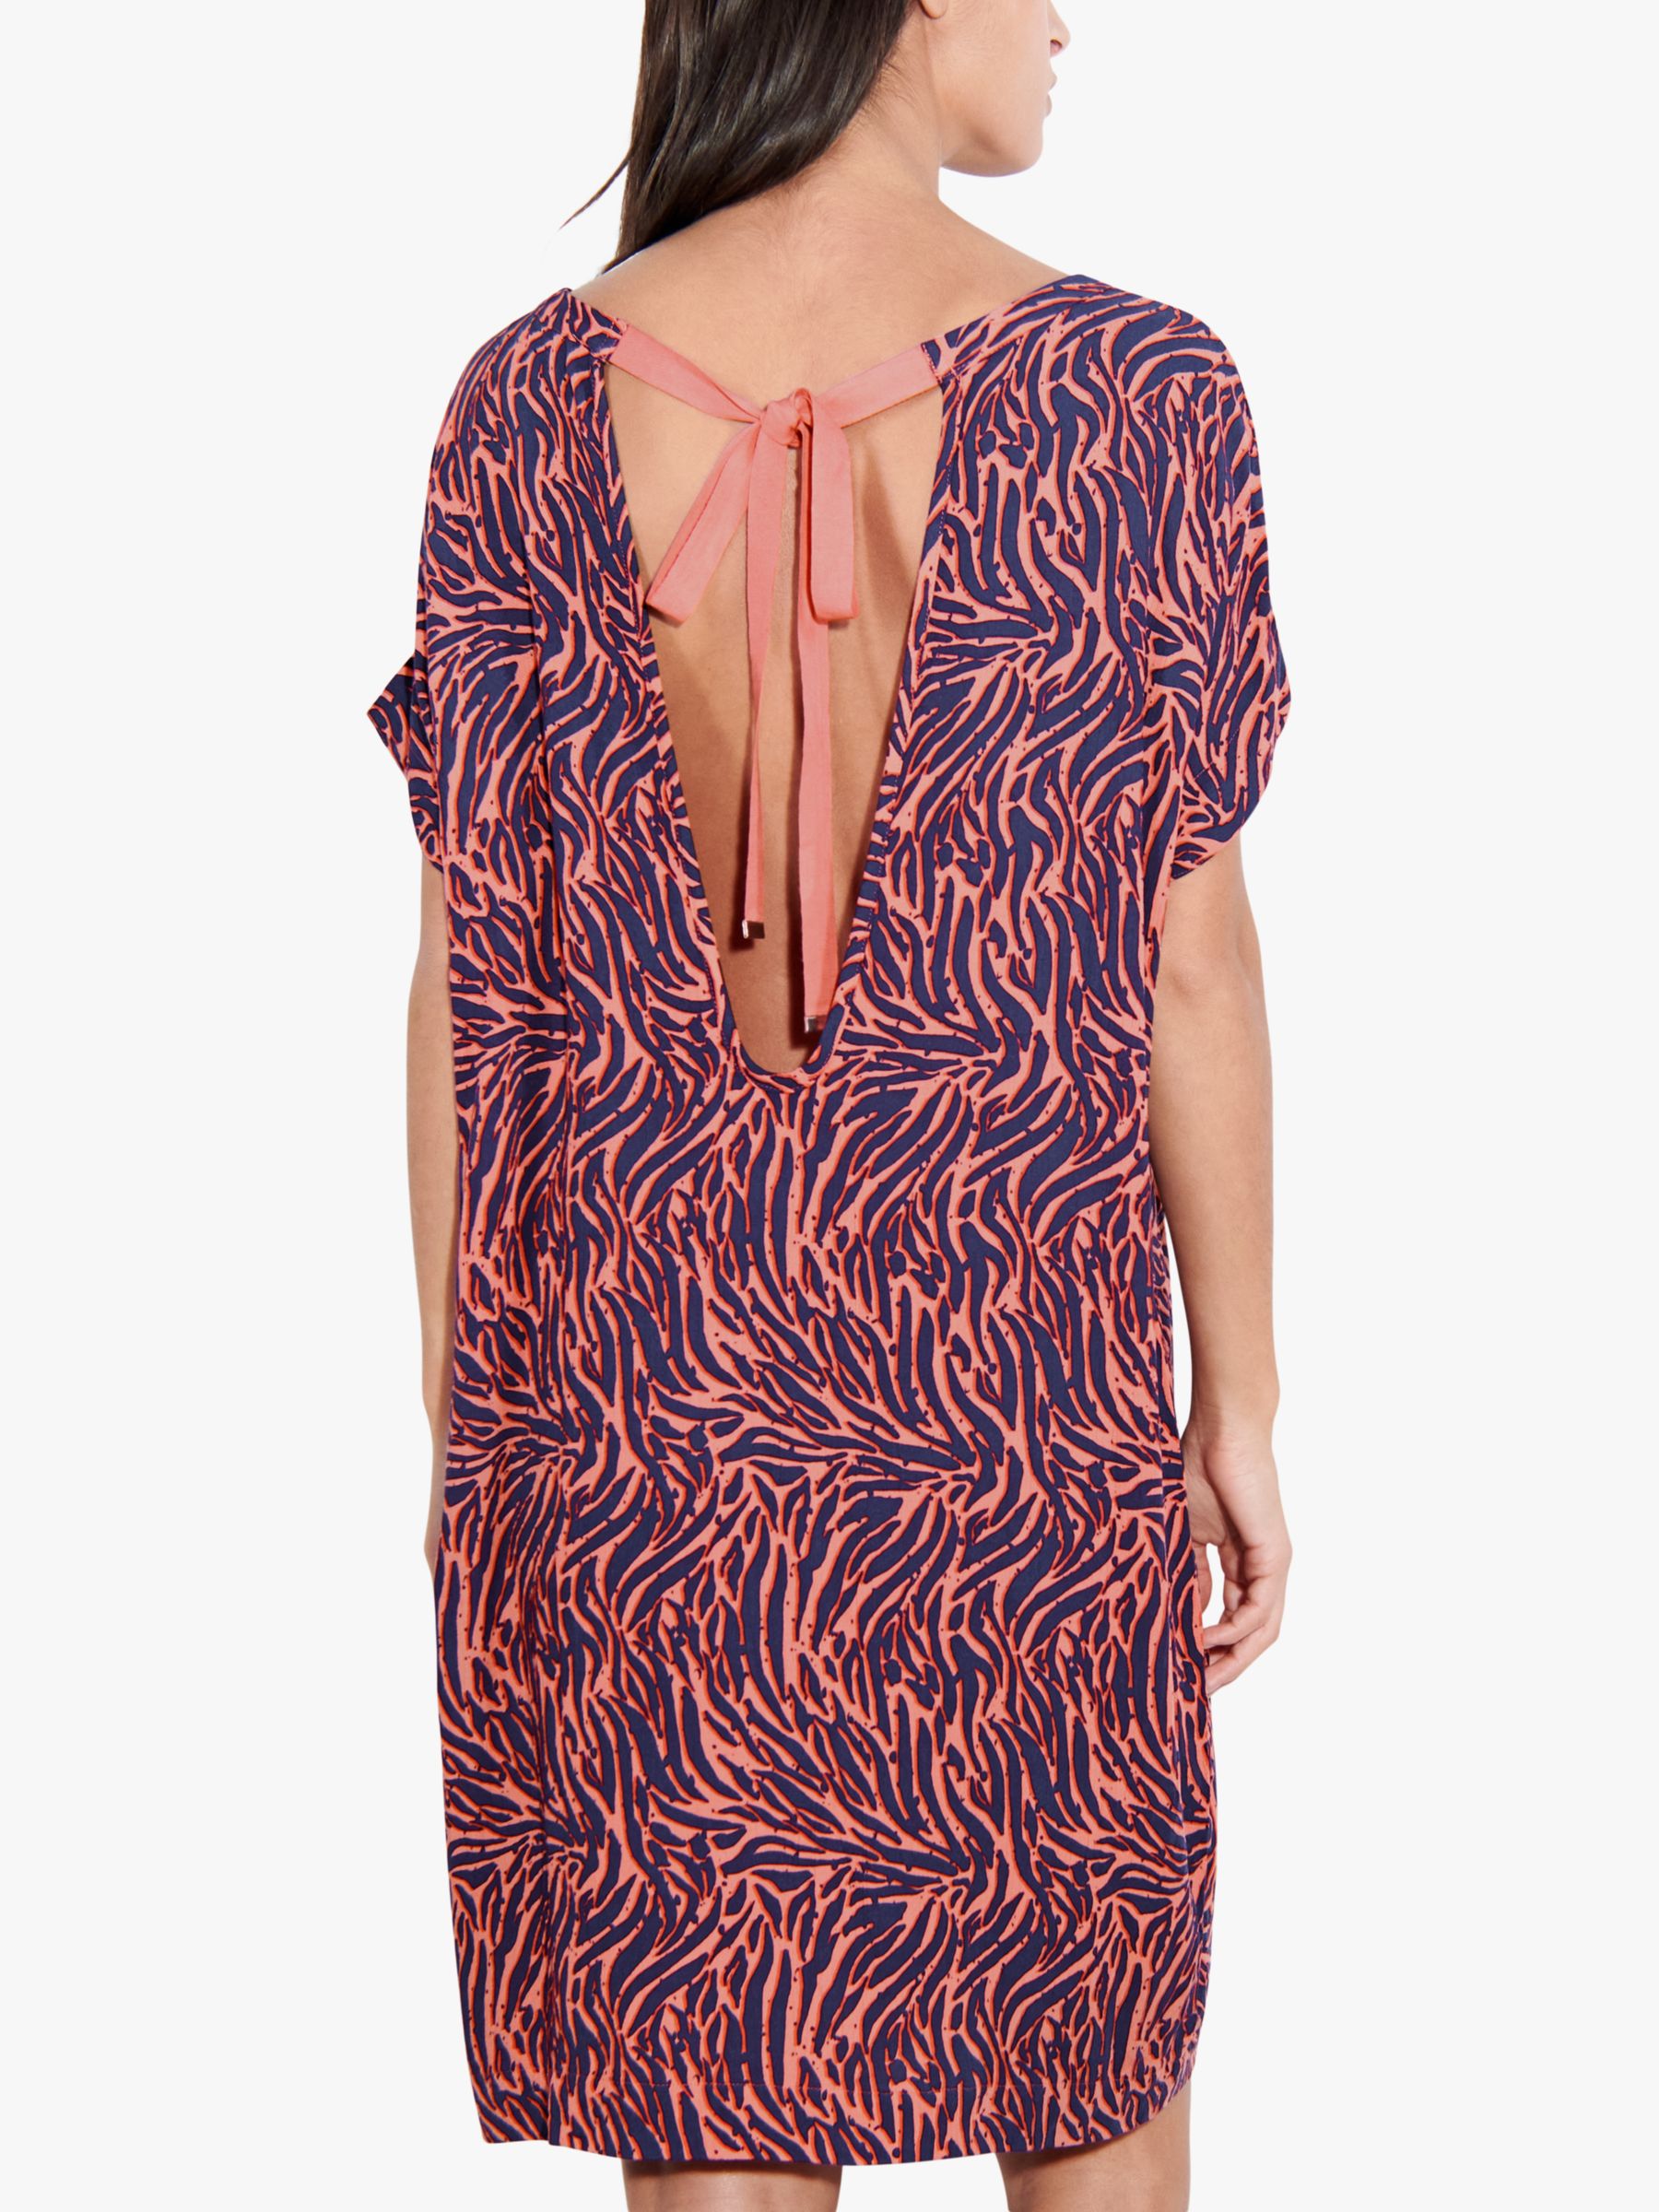 Femilet Pinta Zebra Print Kaftan Dress, Coral/Multi, S-M